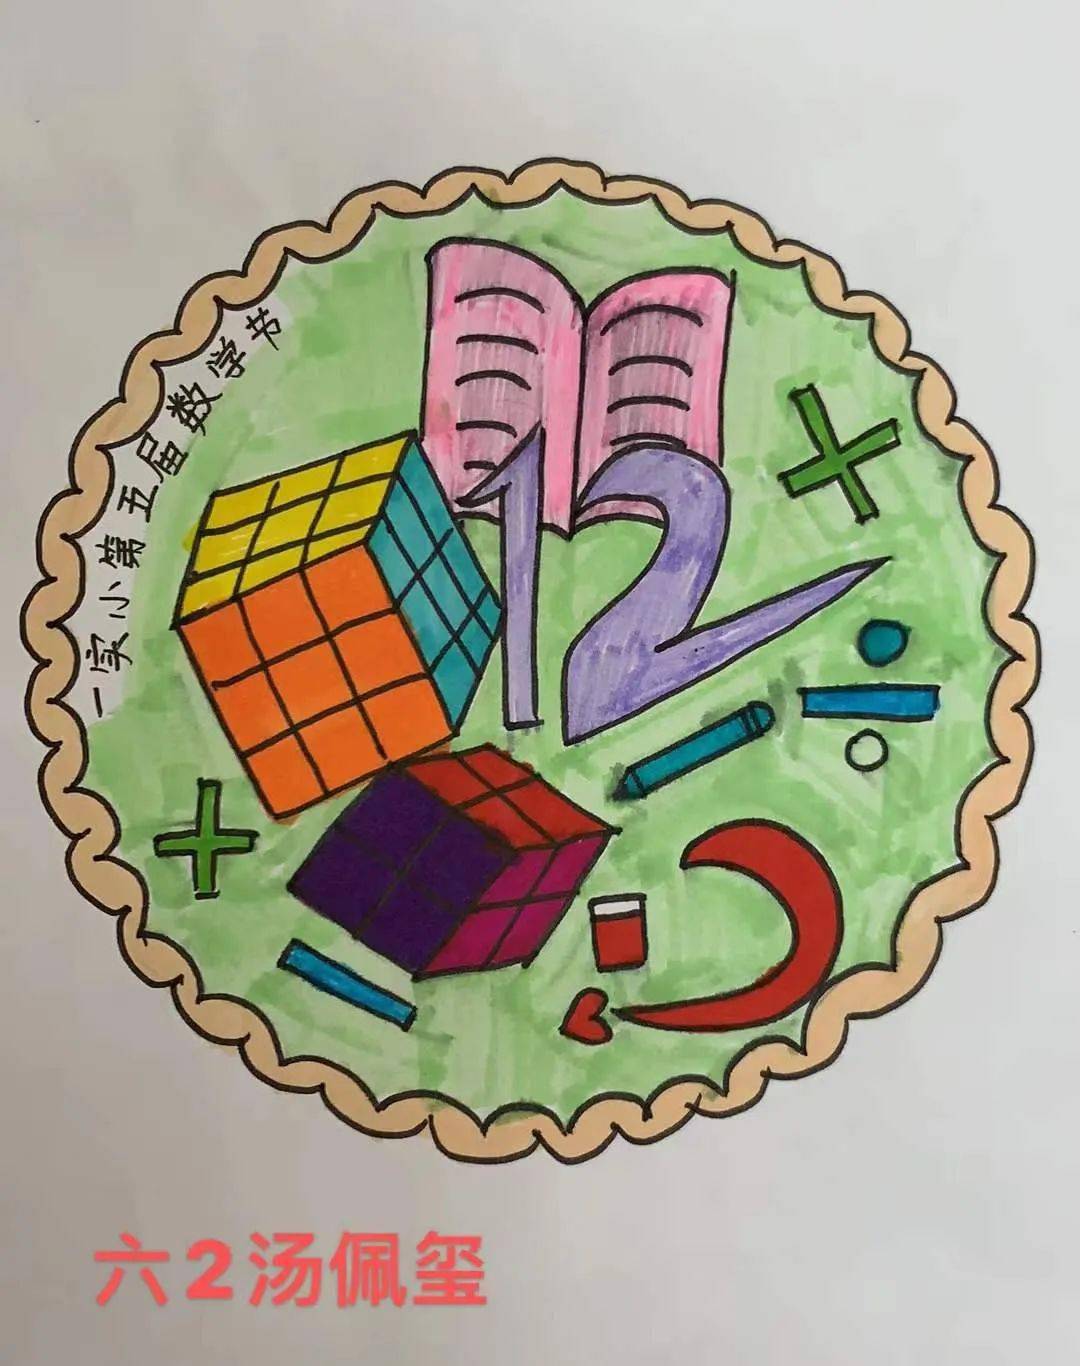 一份份新颖的创意,一幅幅精美的图案展现了孩子们对数学的理解和喜爱